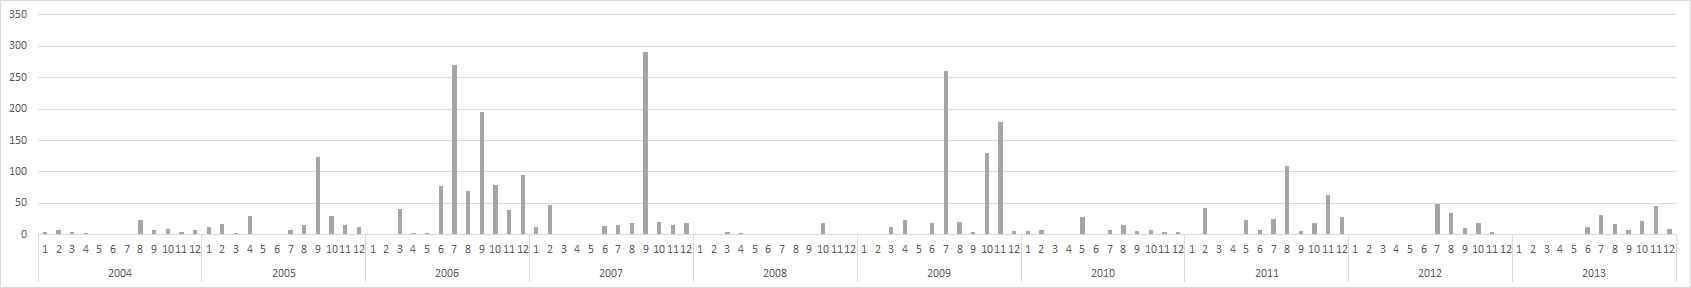 환경부 수질측정망 (현도)의 최근 10년간 분원성대장균군 분포